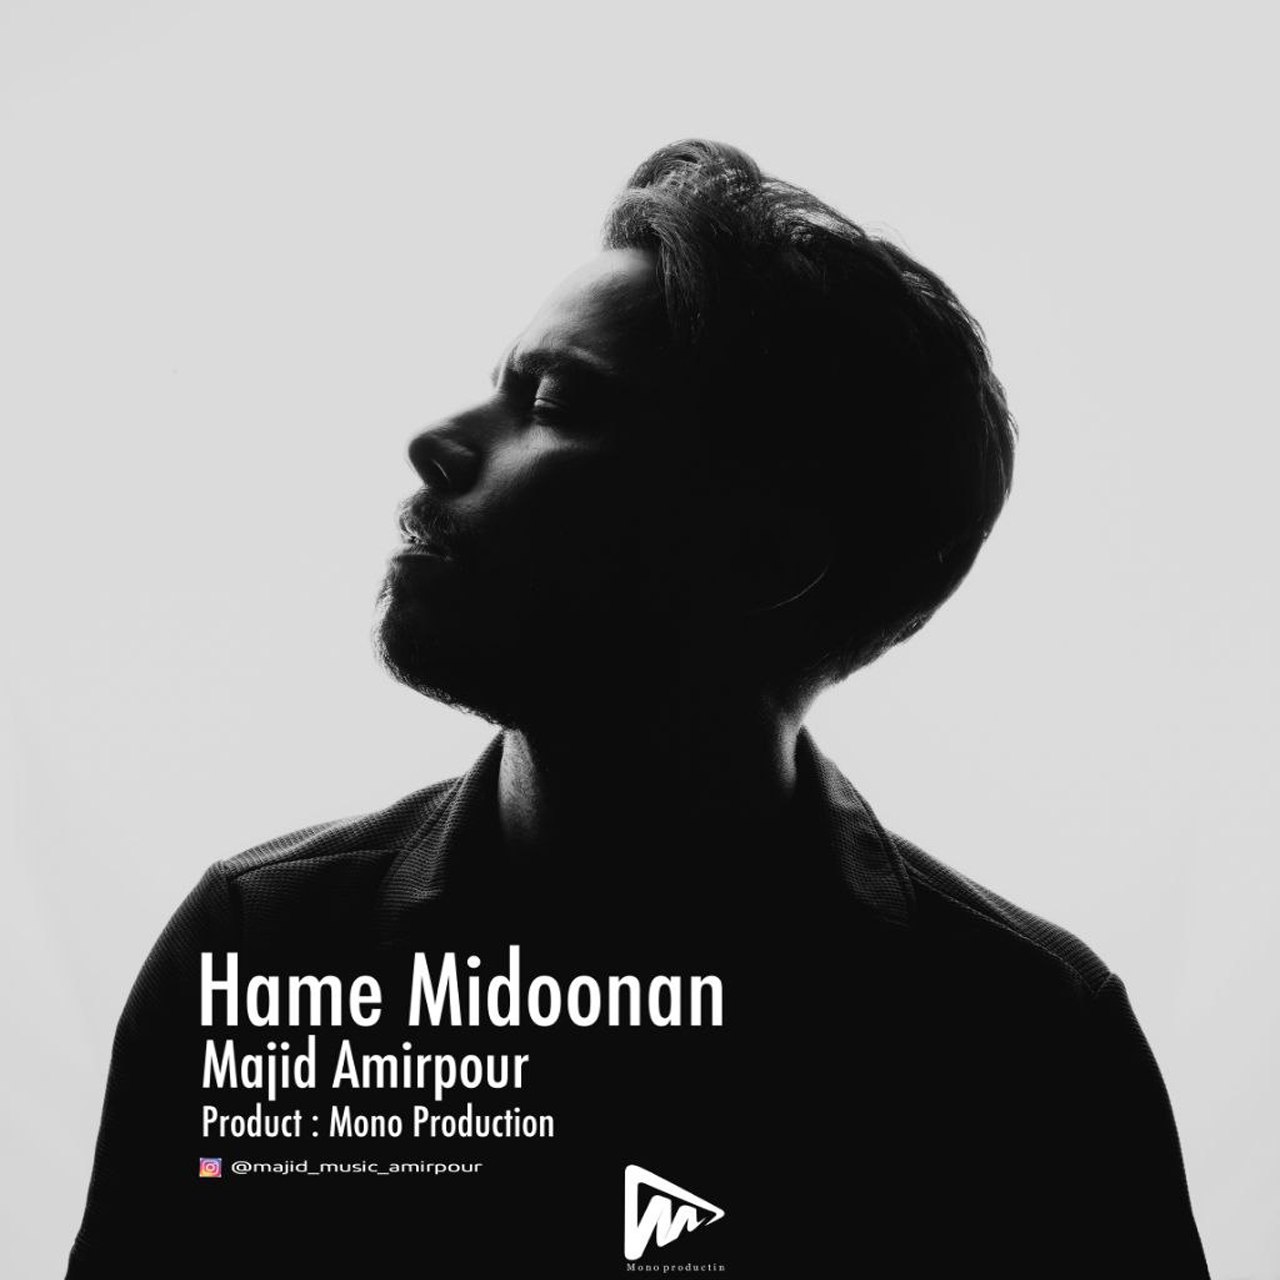 Majid Amirpour – Hame Midoonan